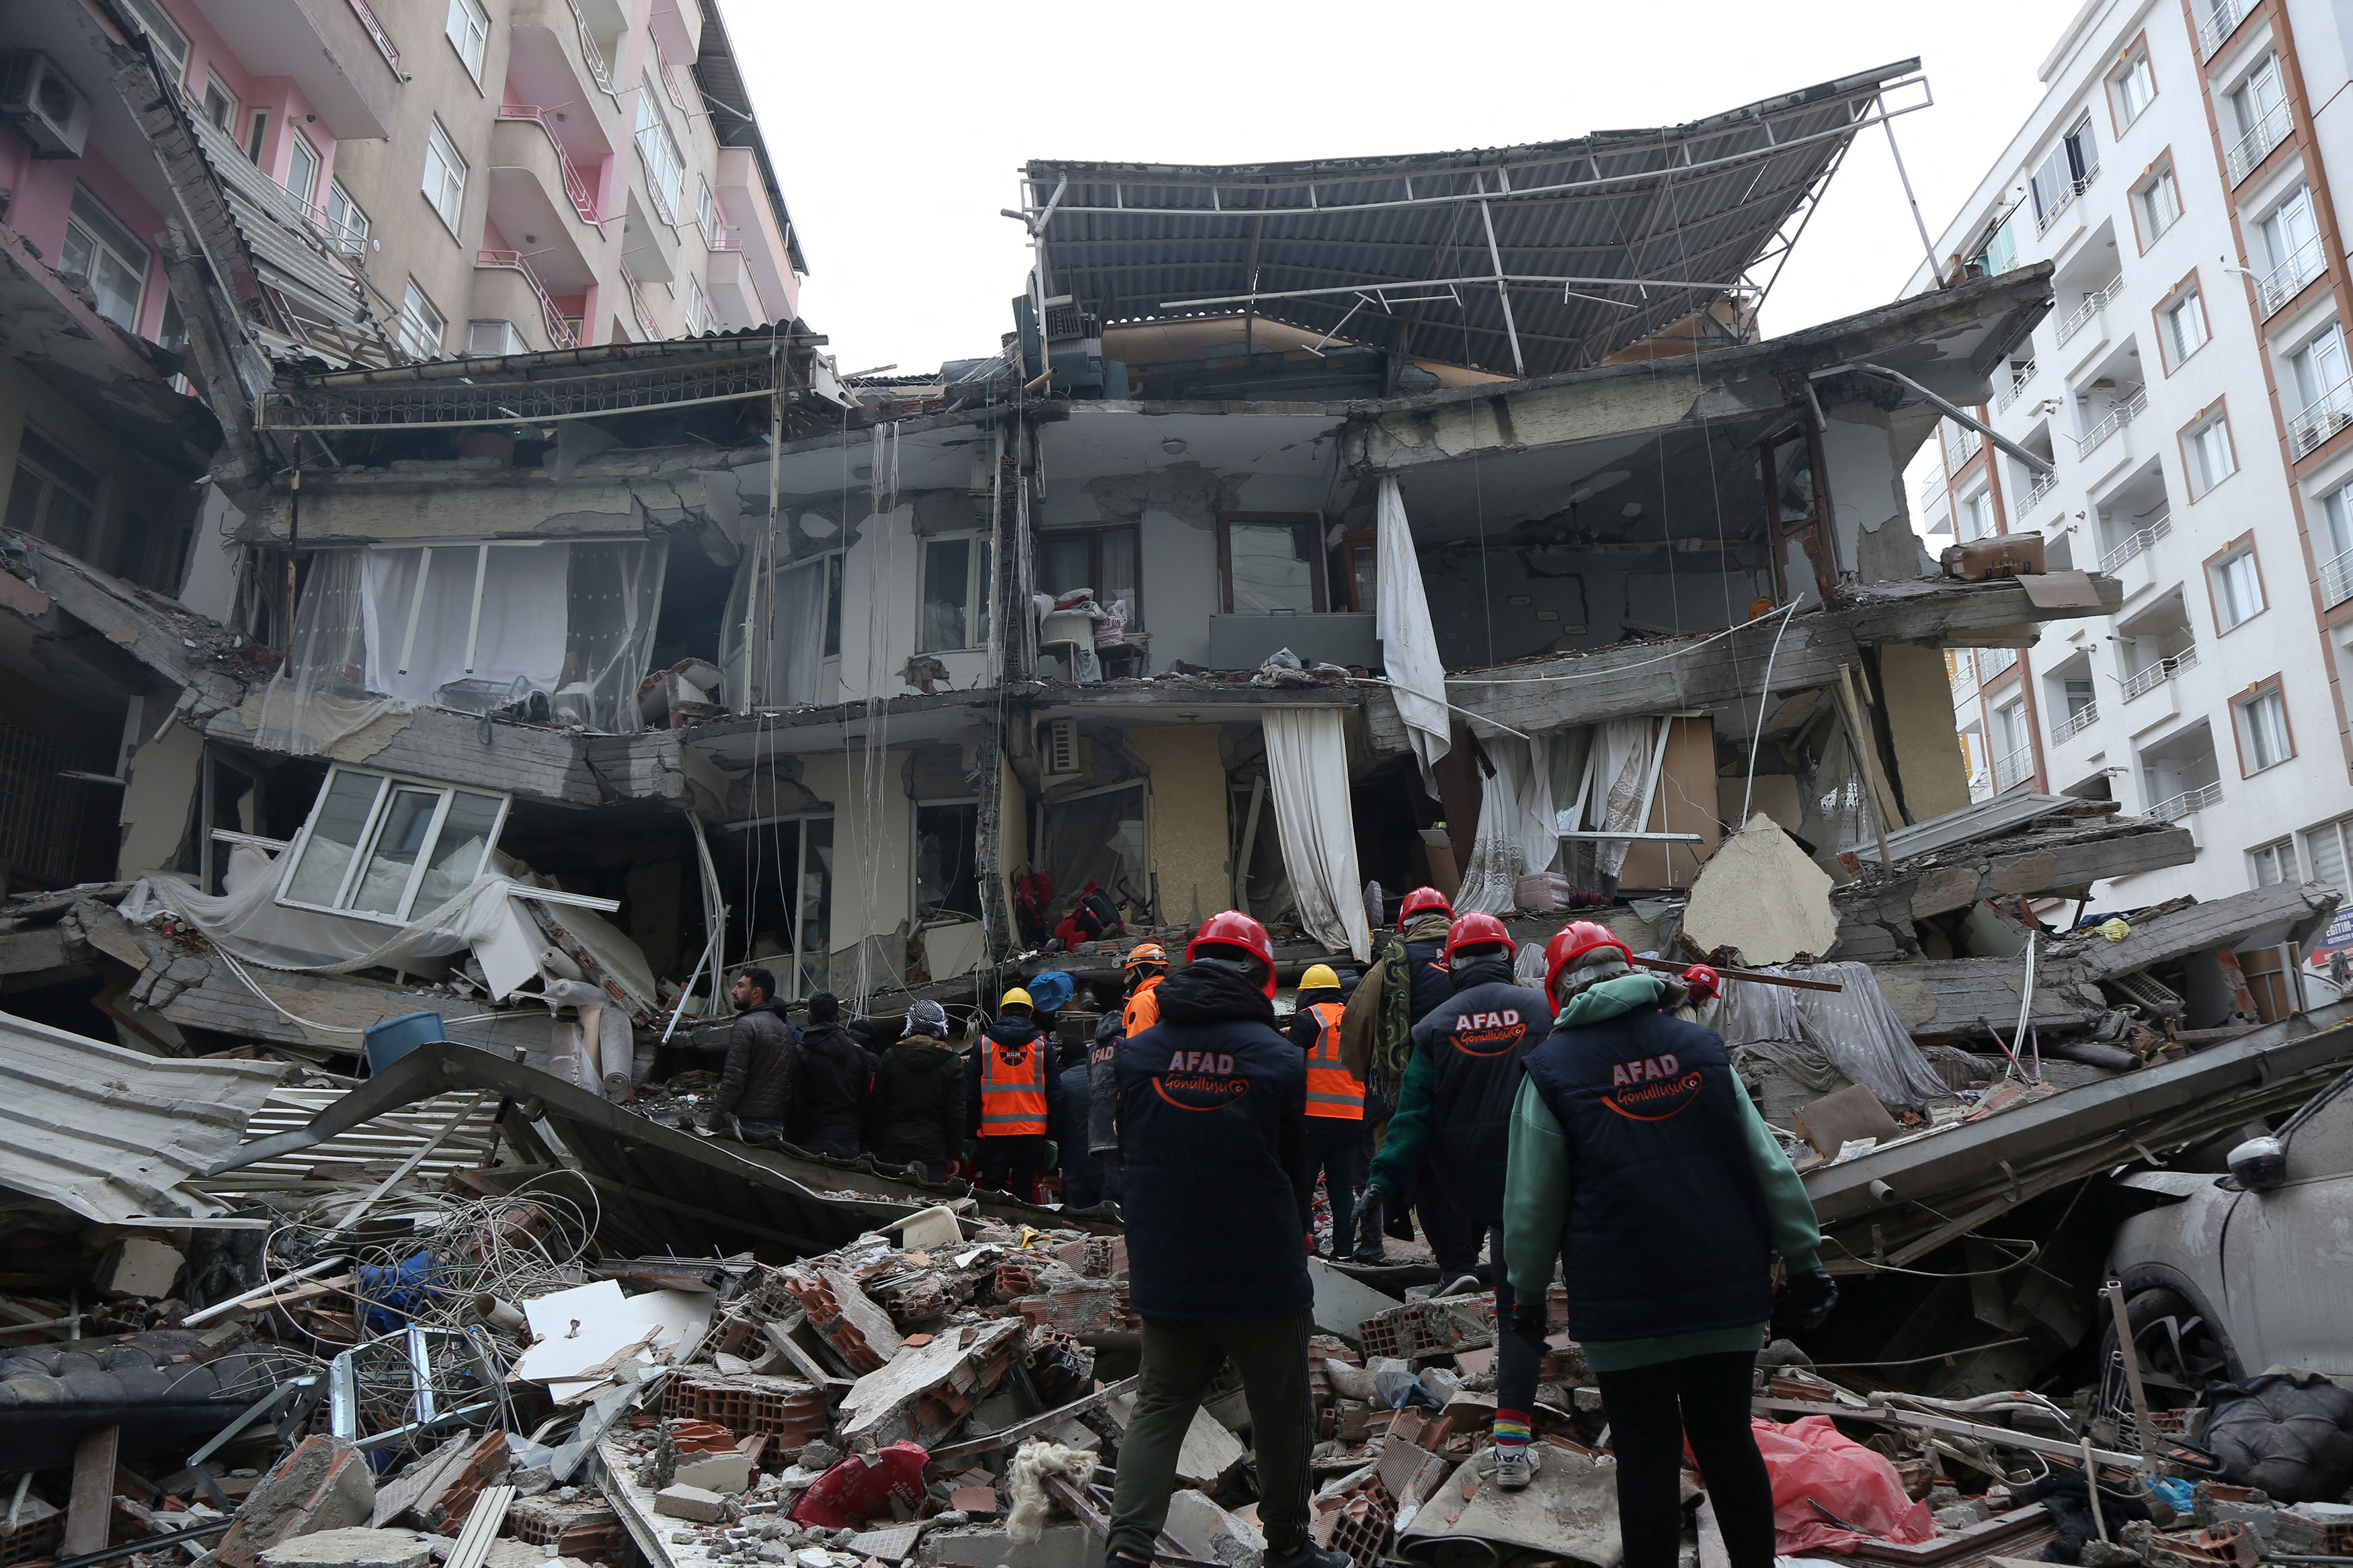 Σεισμός στην Τουρκία: «Δύσκολες οι συνθήκες, δεν υπάρχει συντονισμός» λέει ο Λέκκας